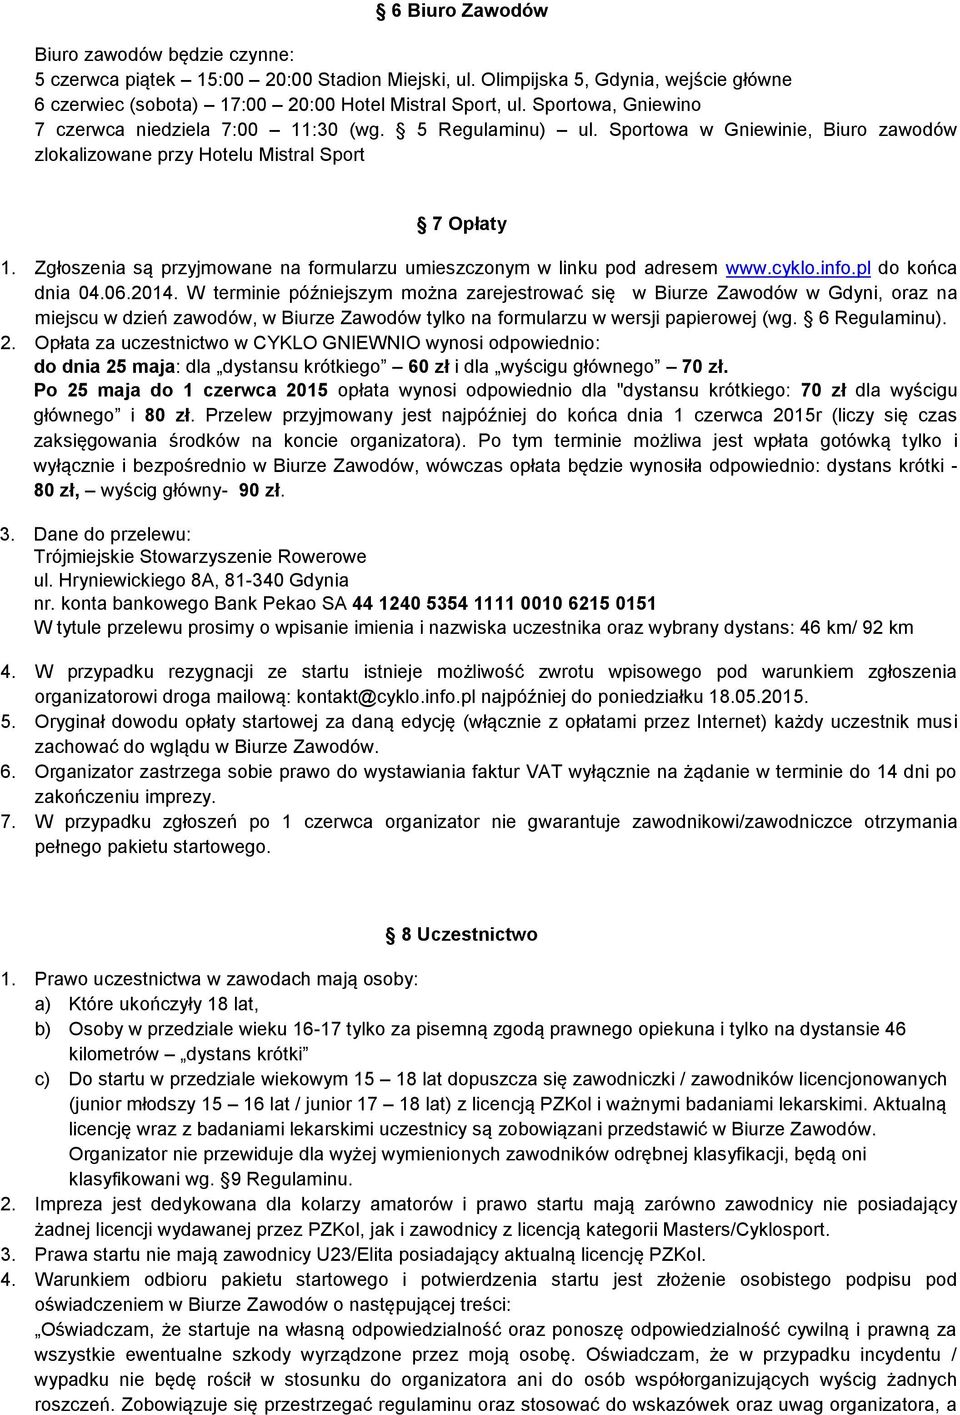 Zgłoszenia są przyjmowane na formularzu umieszczonym w linku pod adresem www.cyklo.info.pl do końca dnia 04.06.2014.